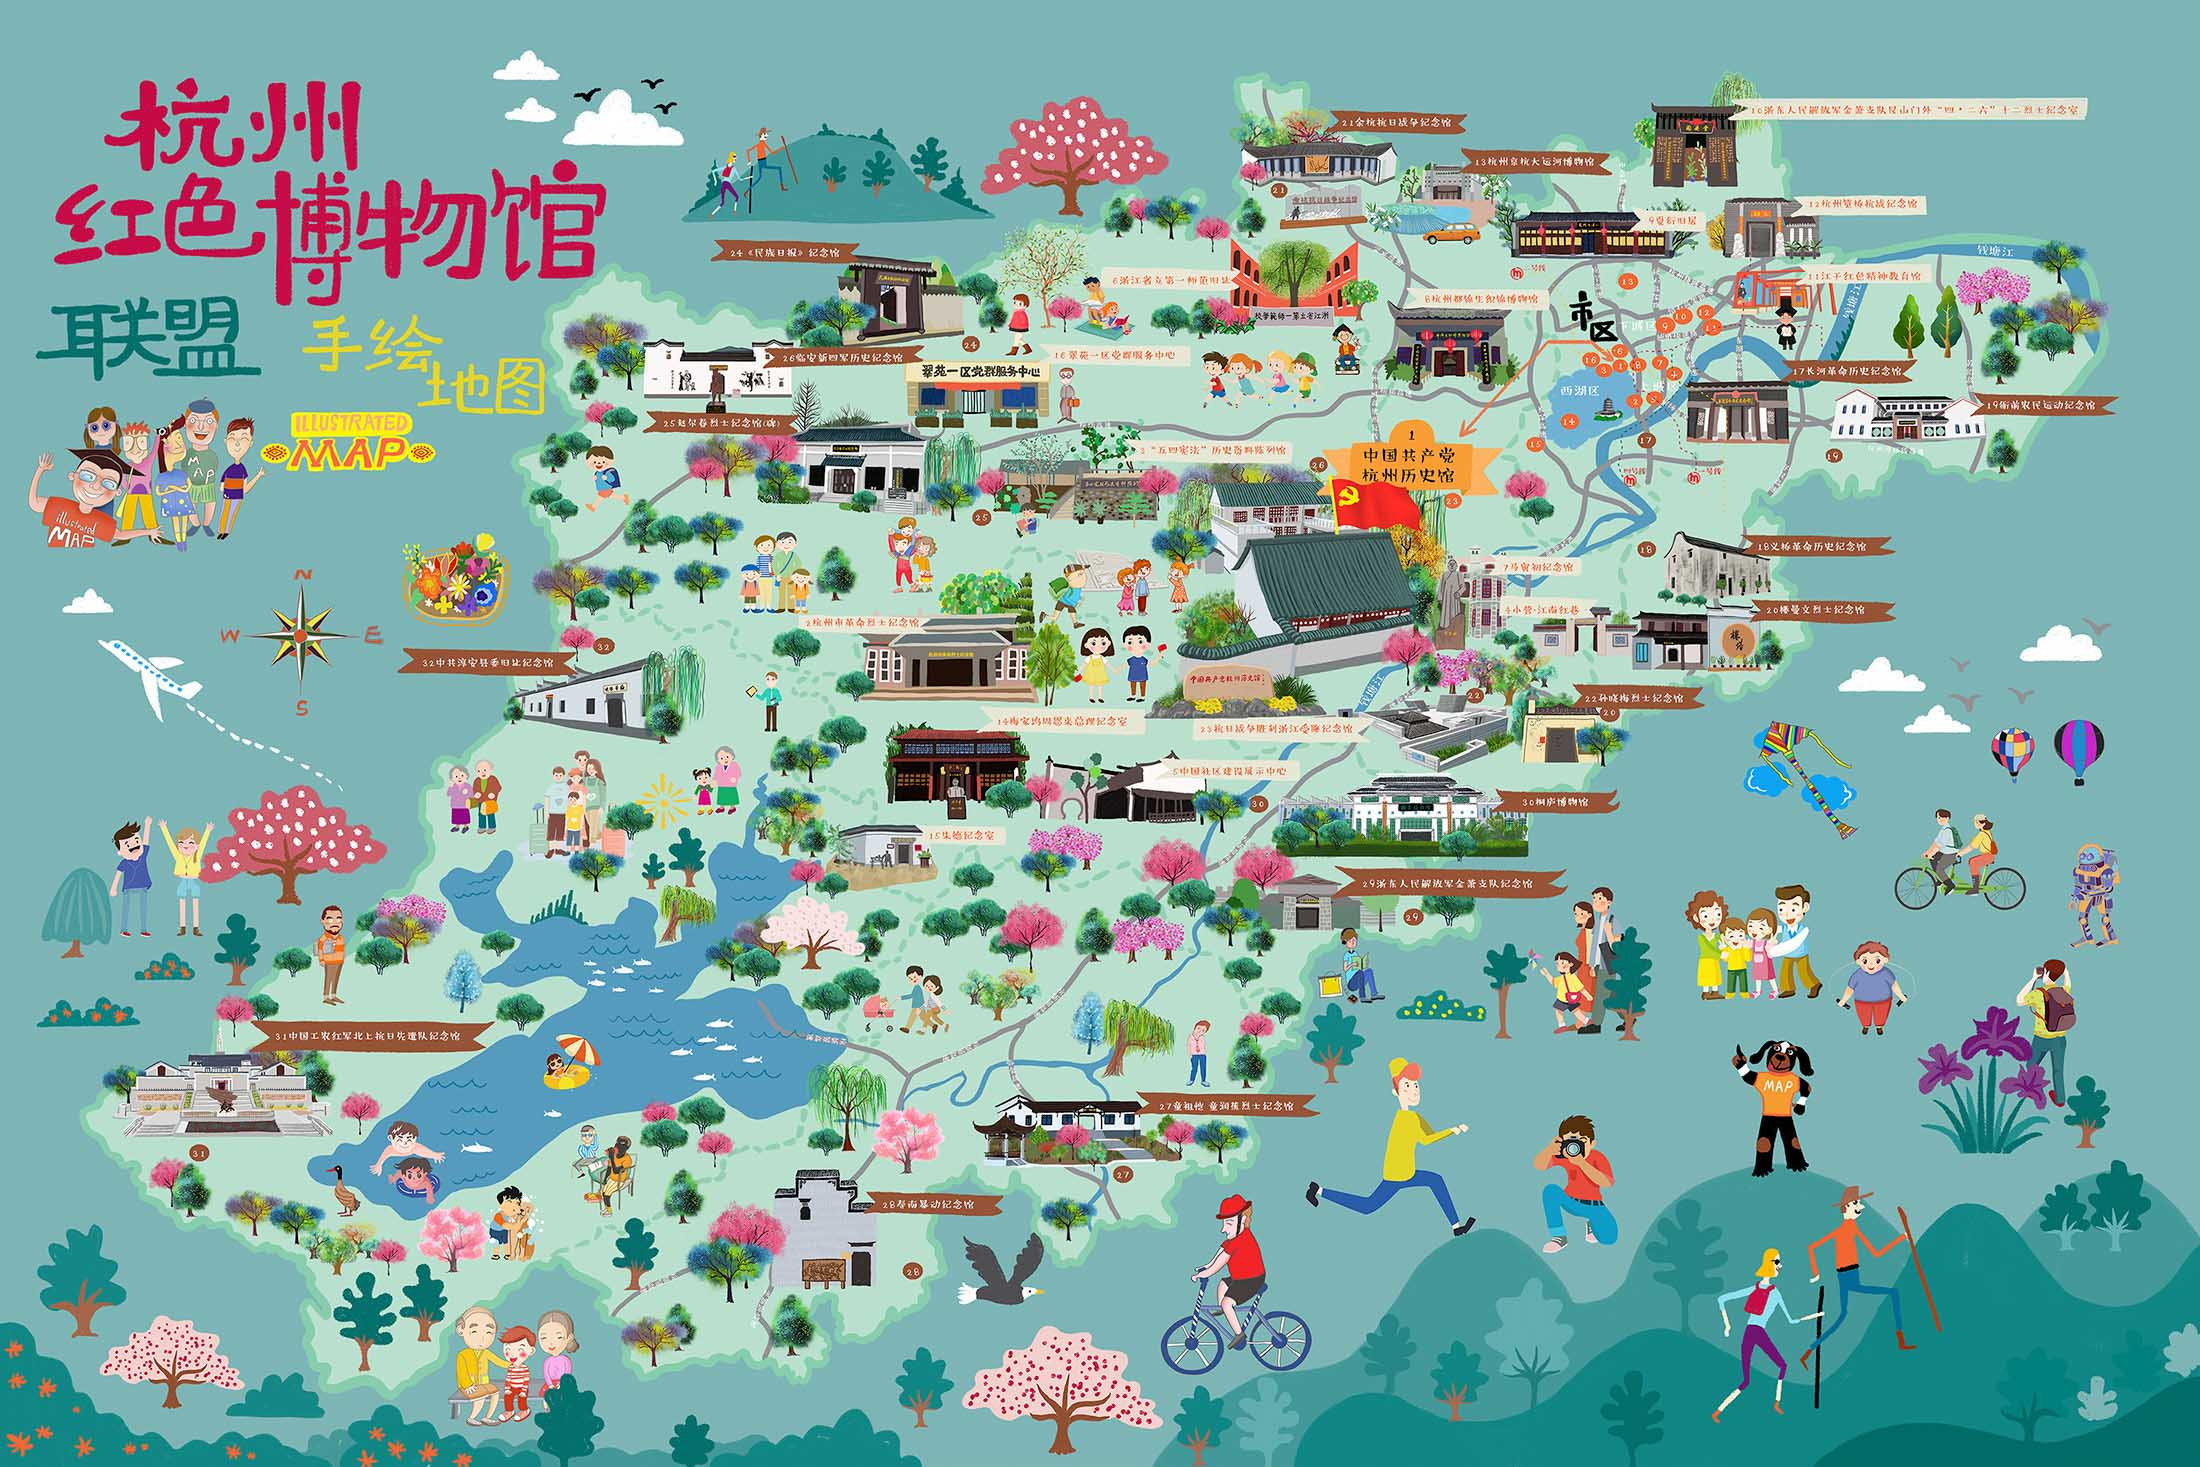 公坡镇手绘地图与科技的完美结合 